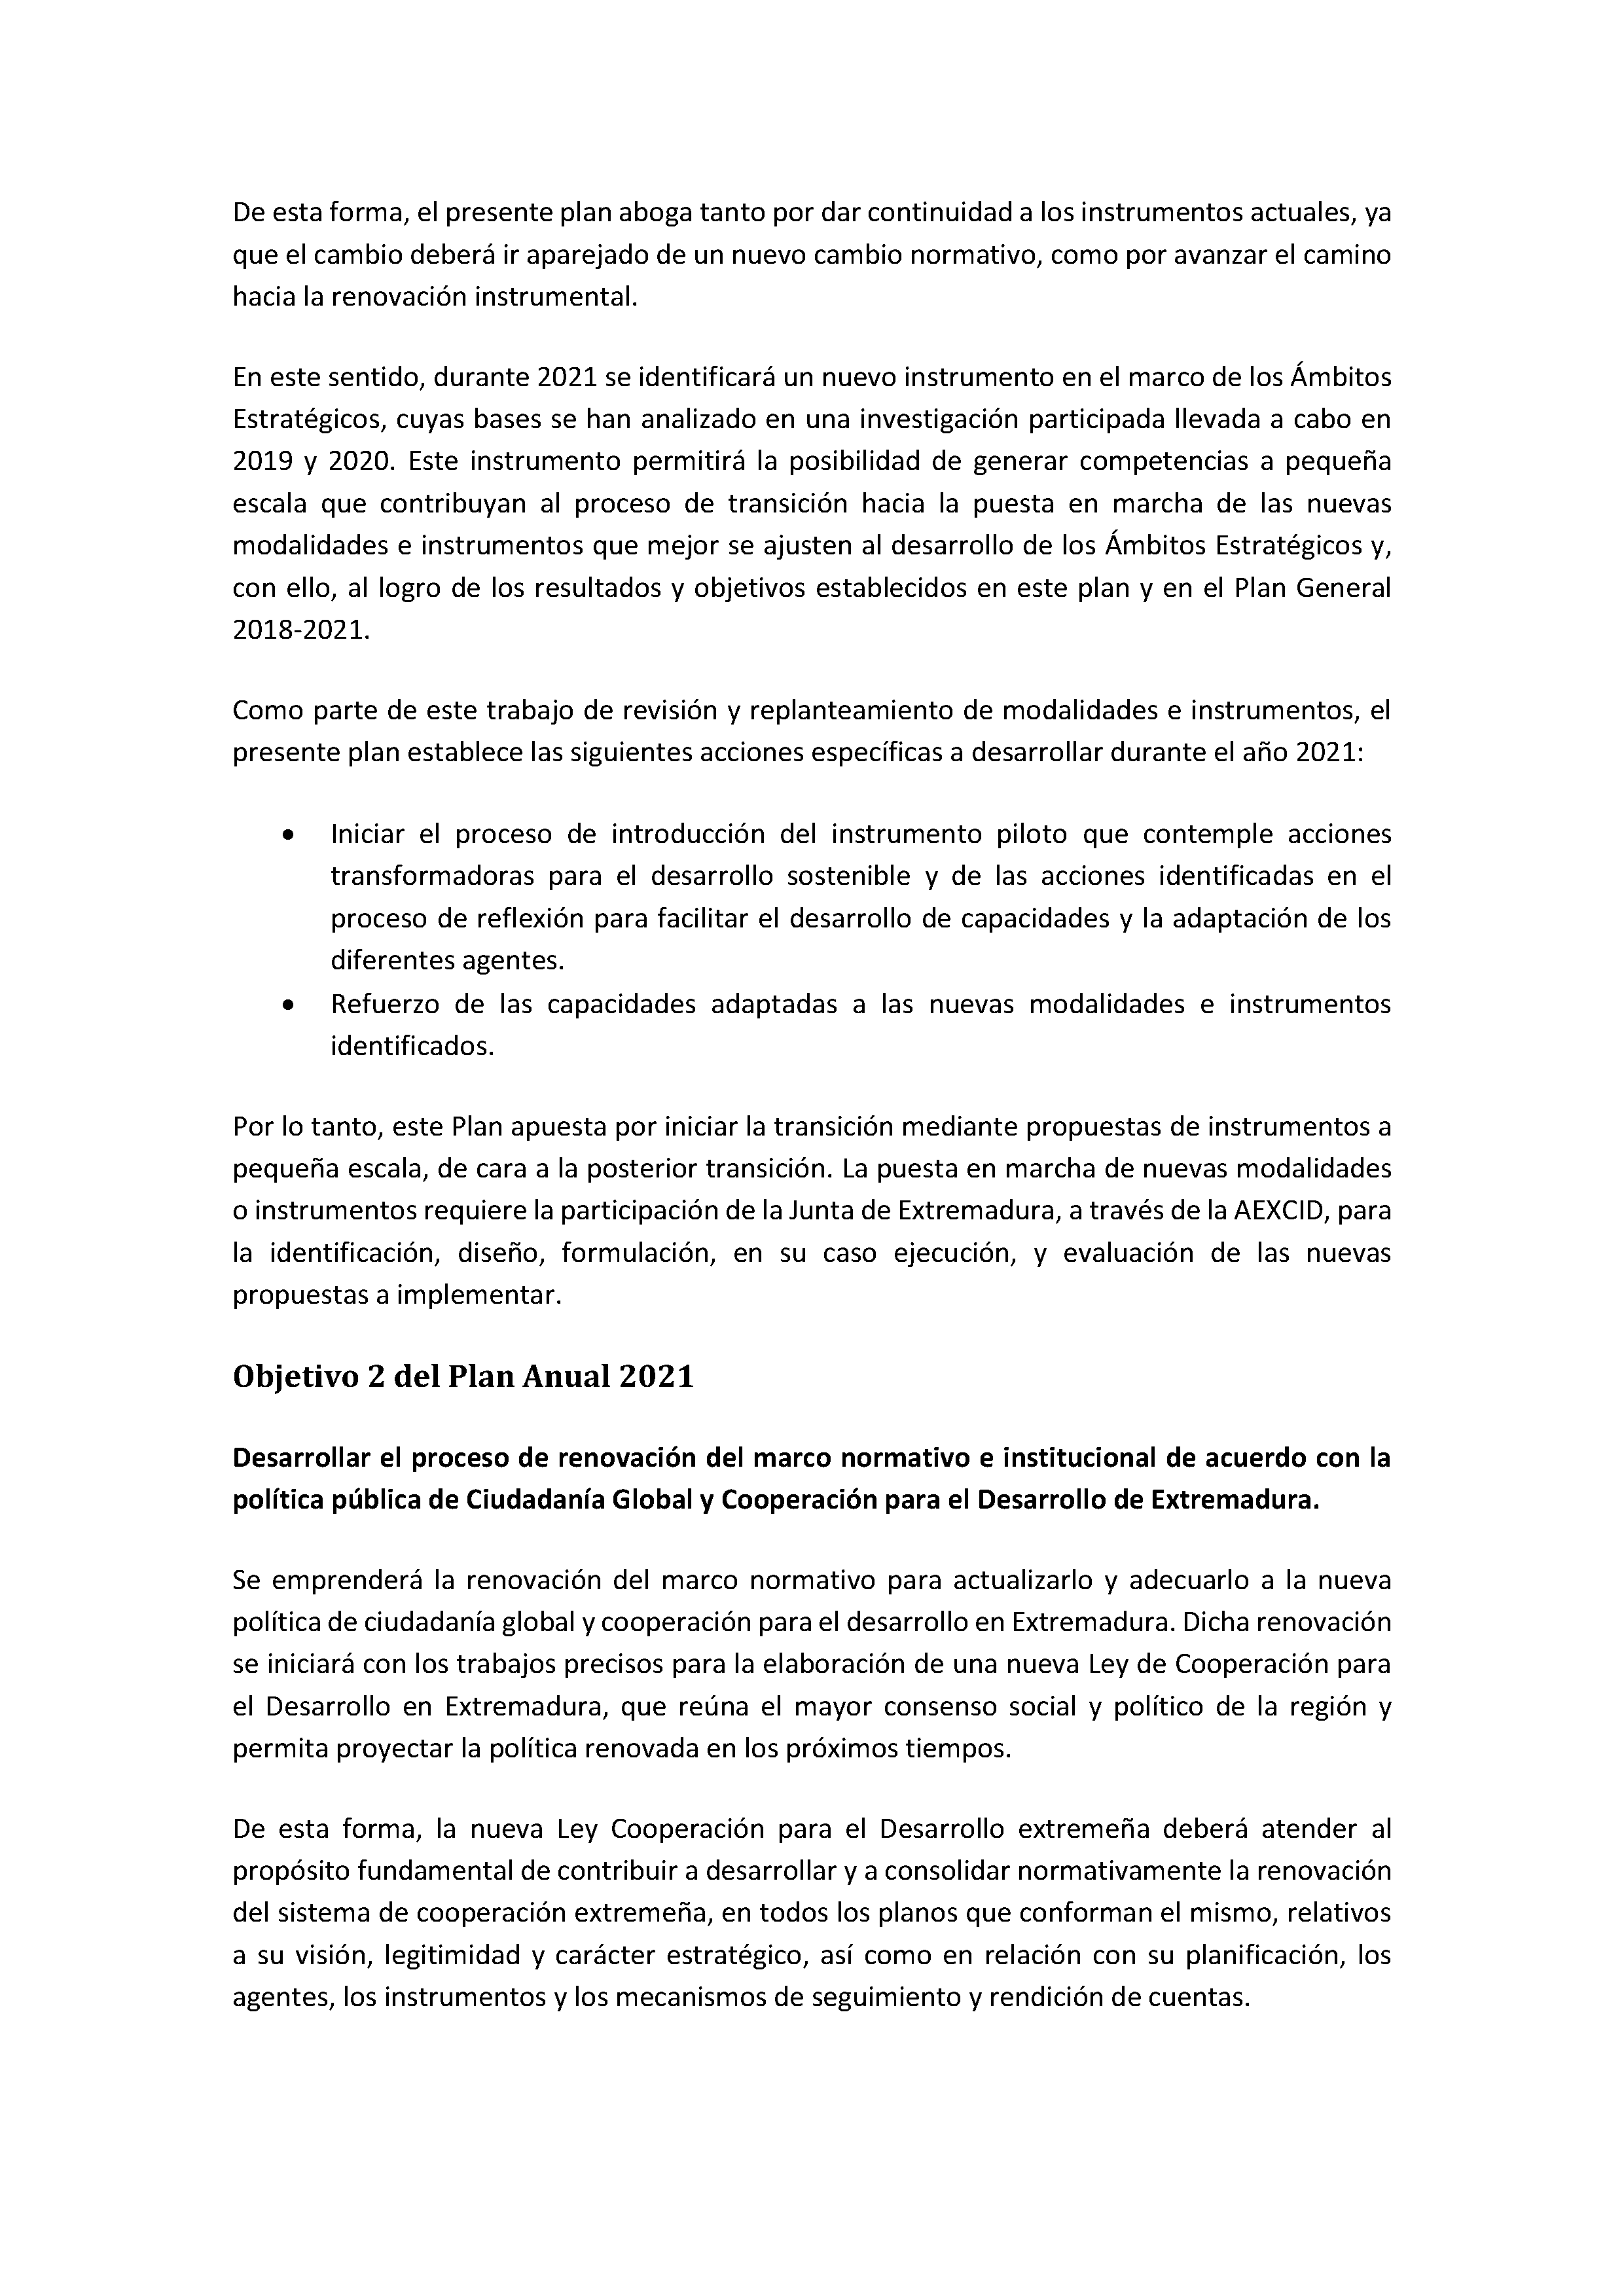 PLAN ANUAL DE COOPERACIÓN EXTREMEÑA 2021 Pag 13